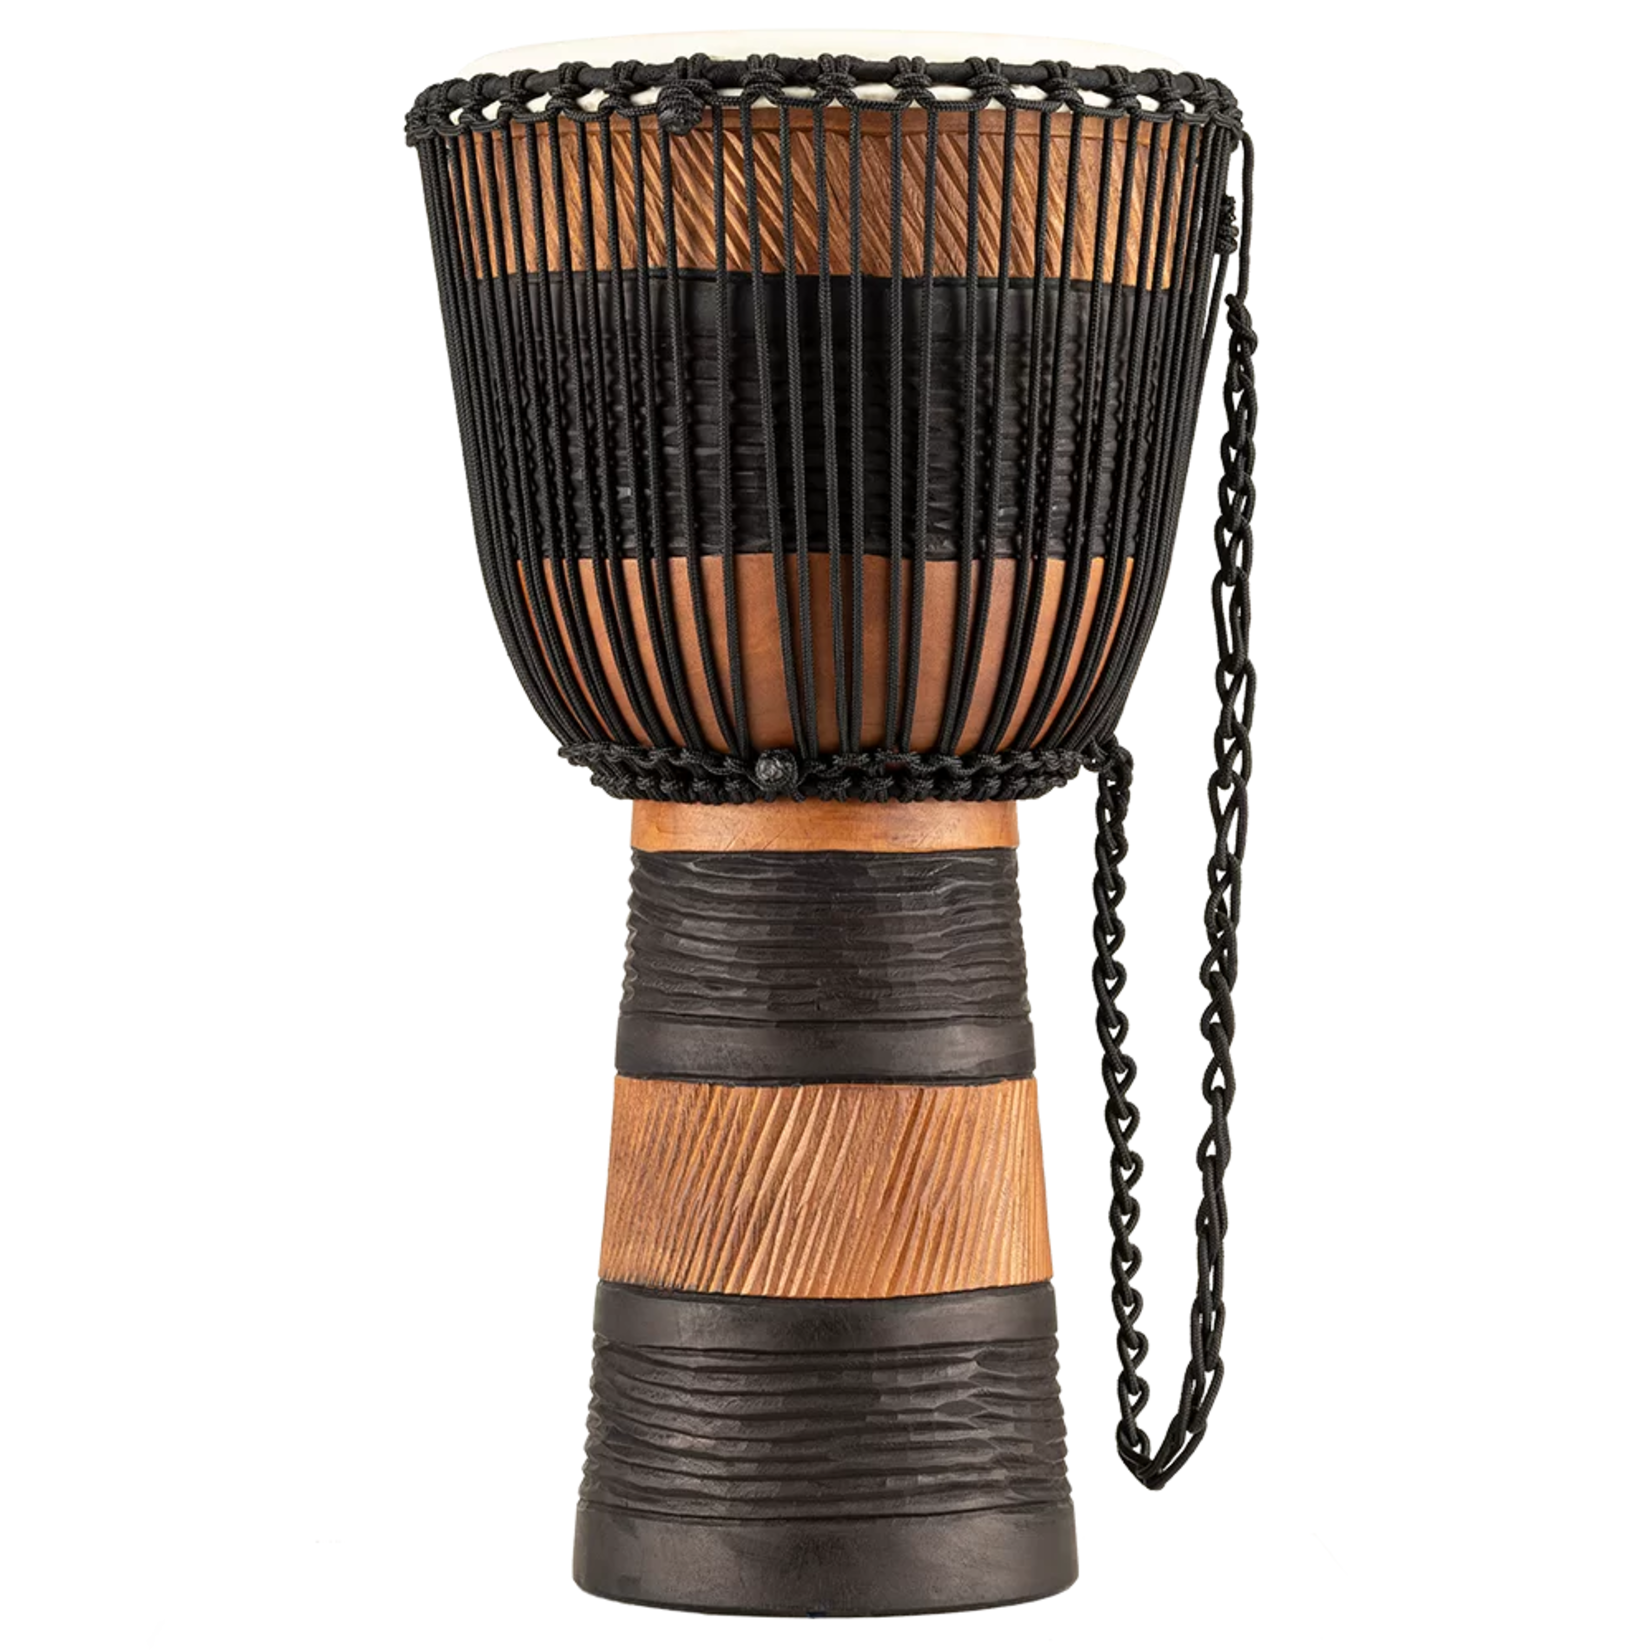 Meinl Meinl 12" Original African Style Rope Tuned Wood Djembe with Bag (Brown/Black) ADJ3-L+BAG